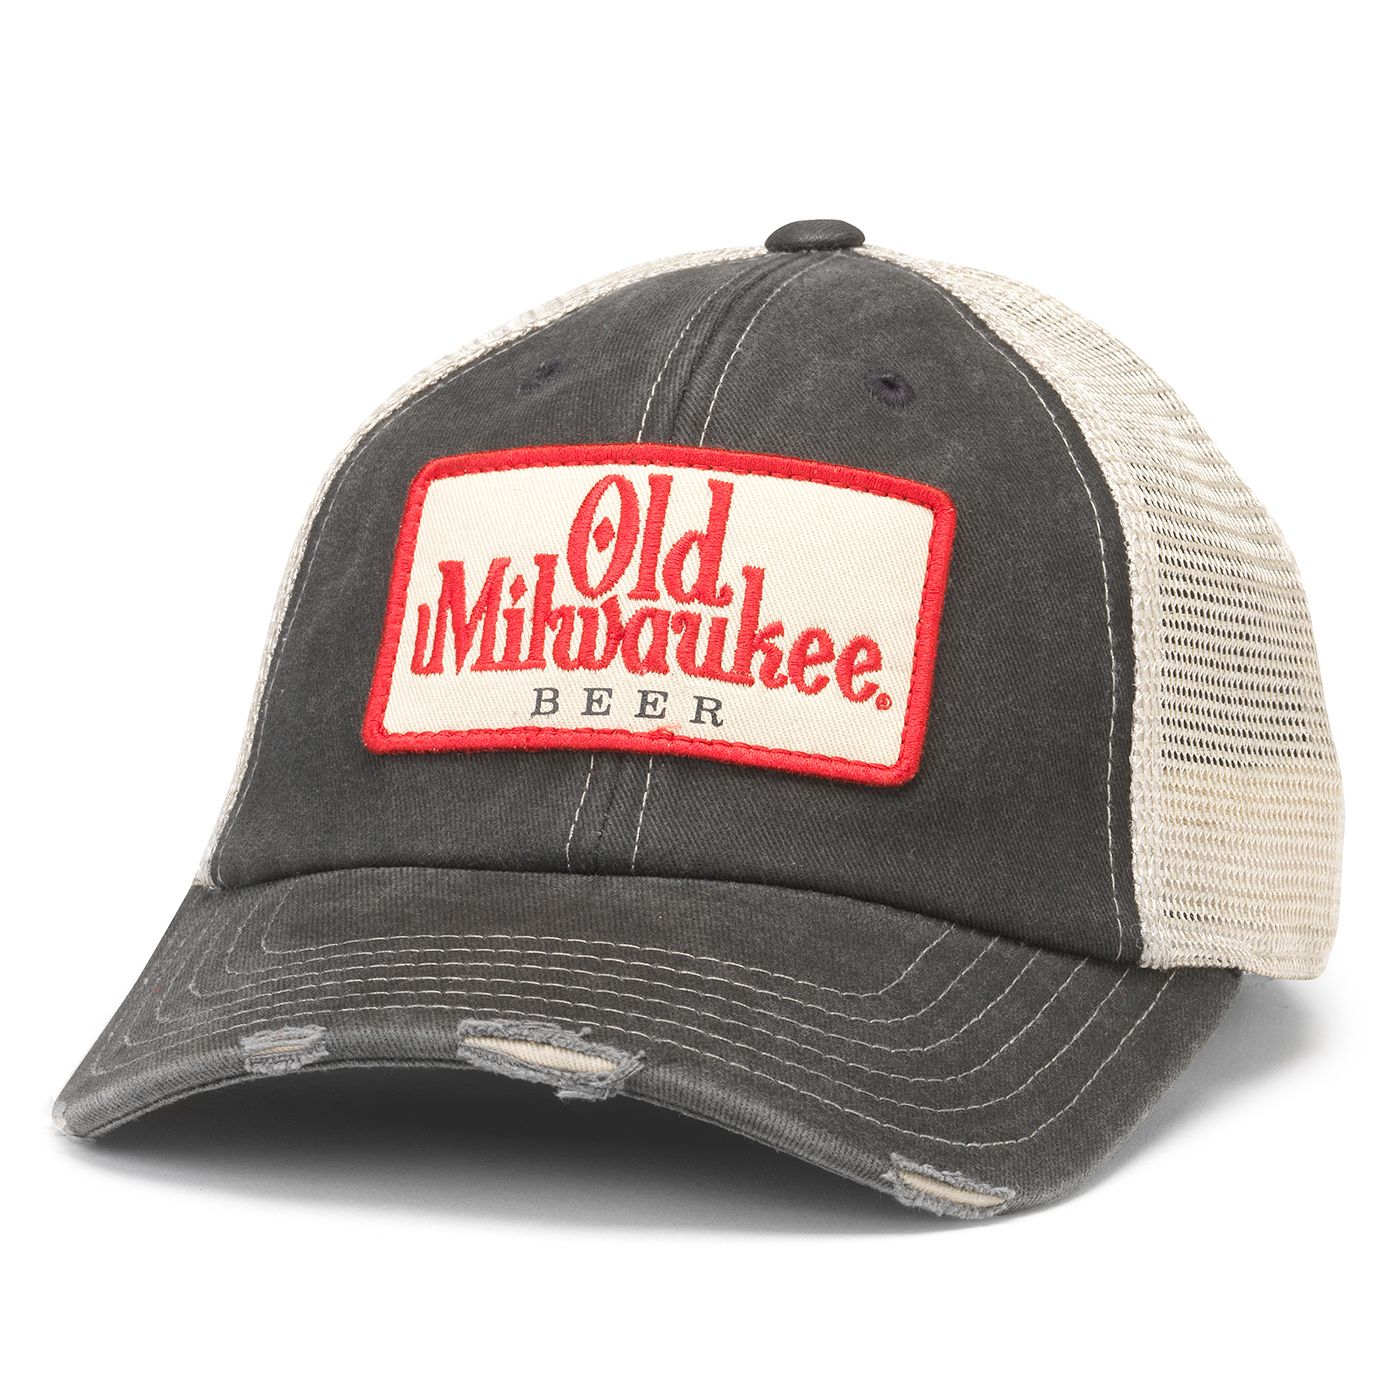 Old Milwaukee Orville hat